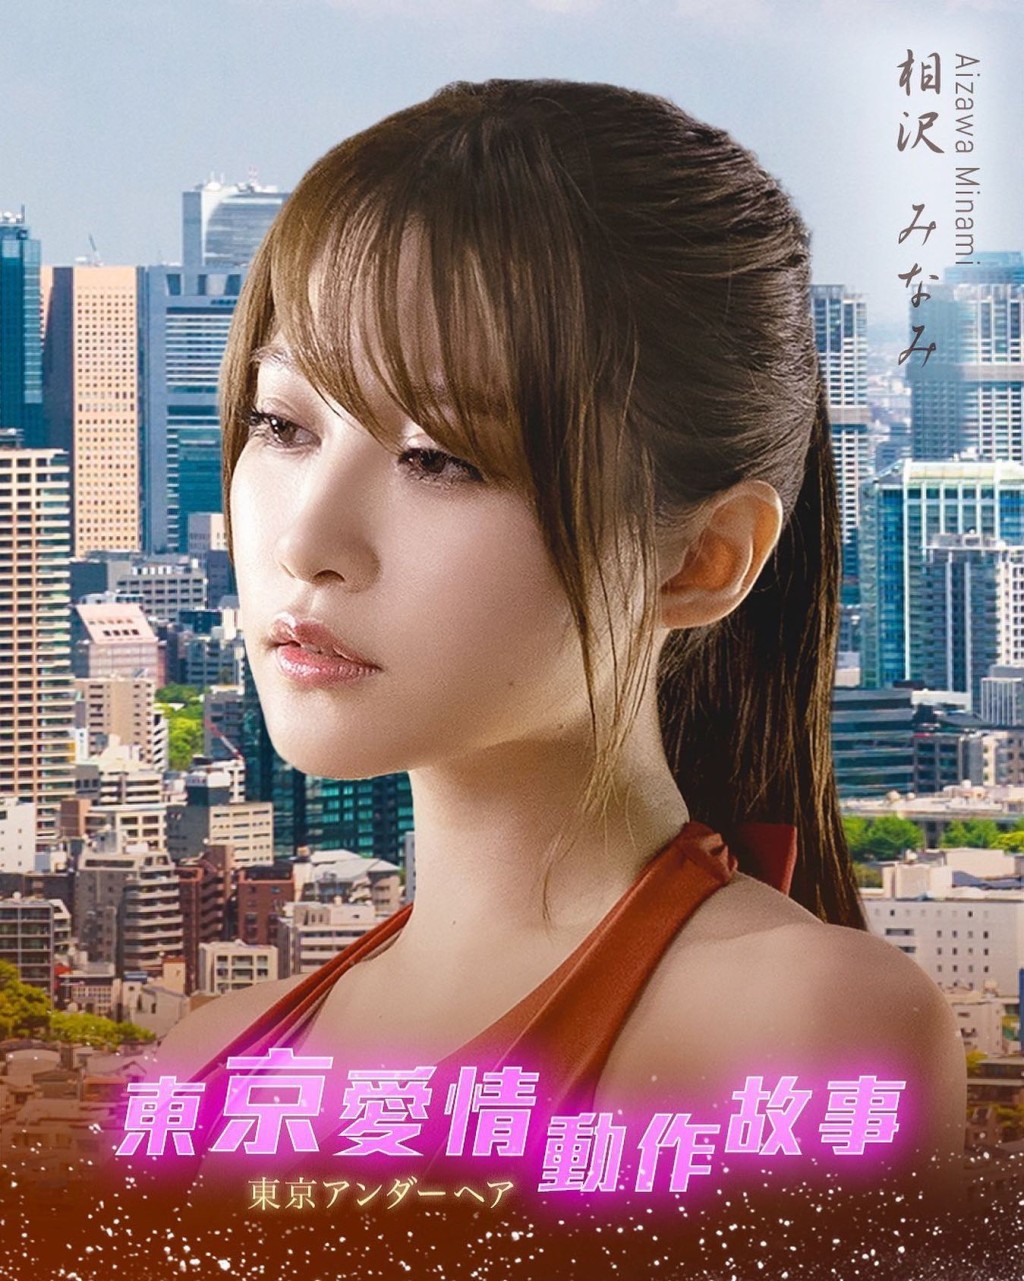 相澤南有新作在香港播出。